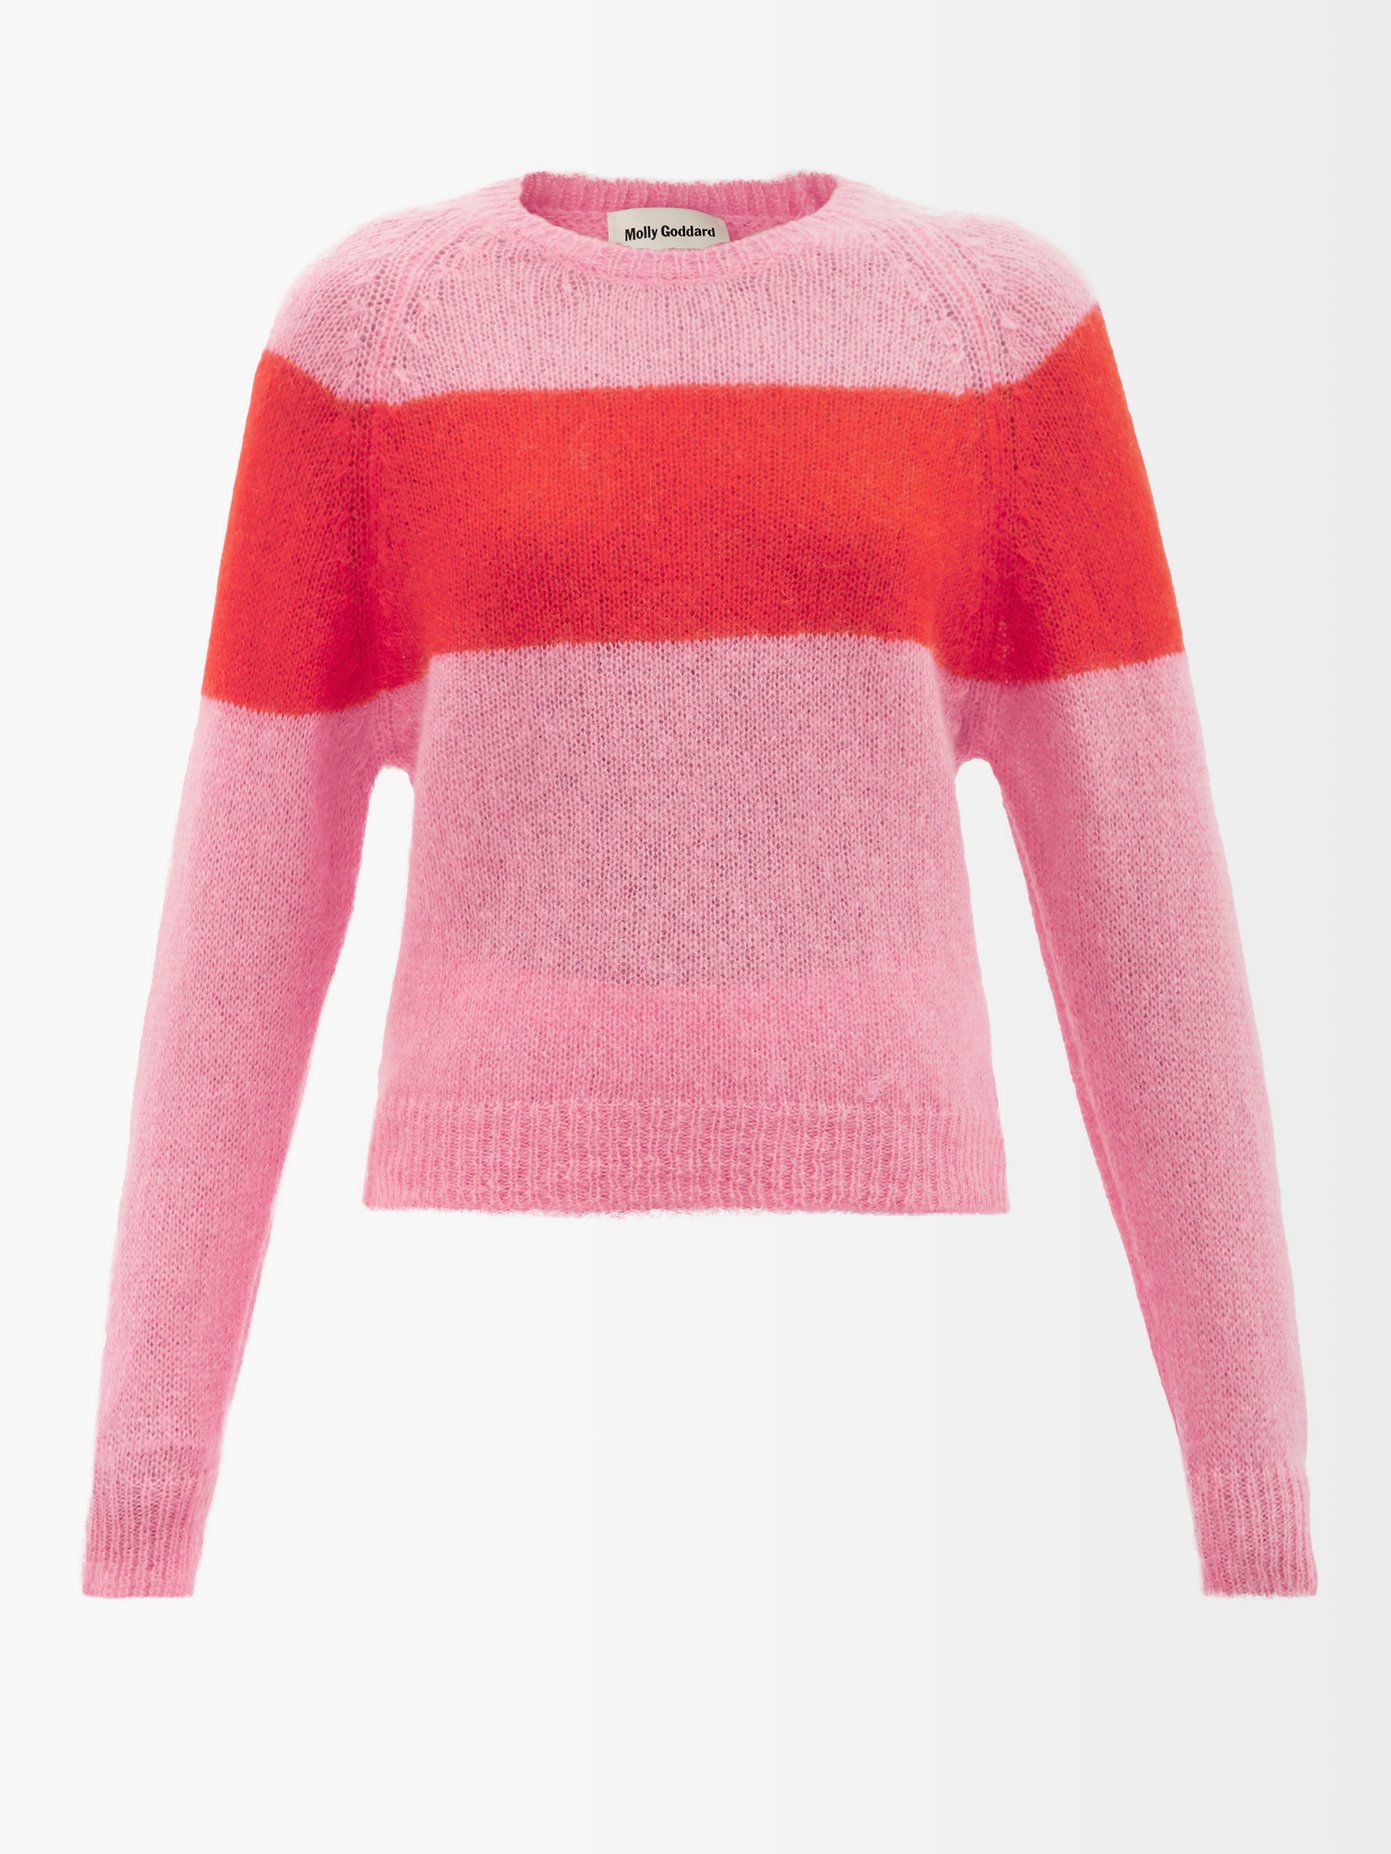 몰리 고다드 스웨터 Molly Goddard Pink Sofia stripe-intarsia mohair-blend sweater